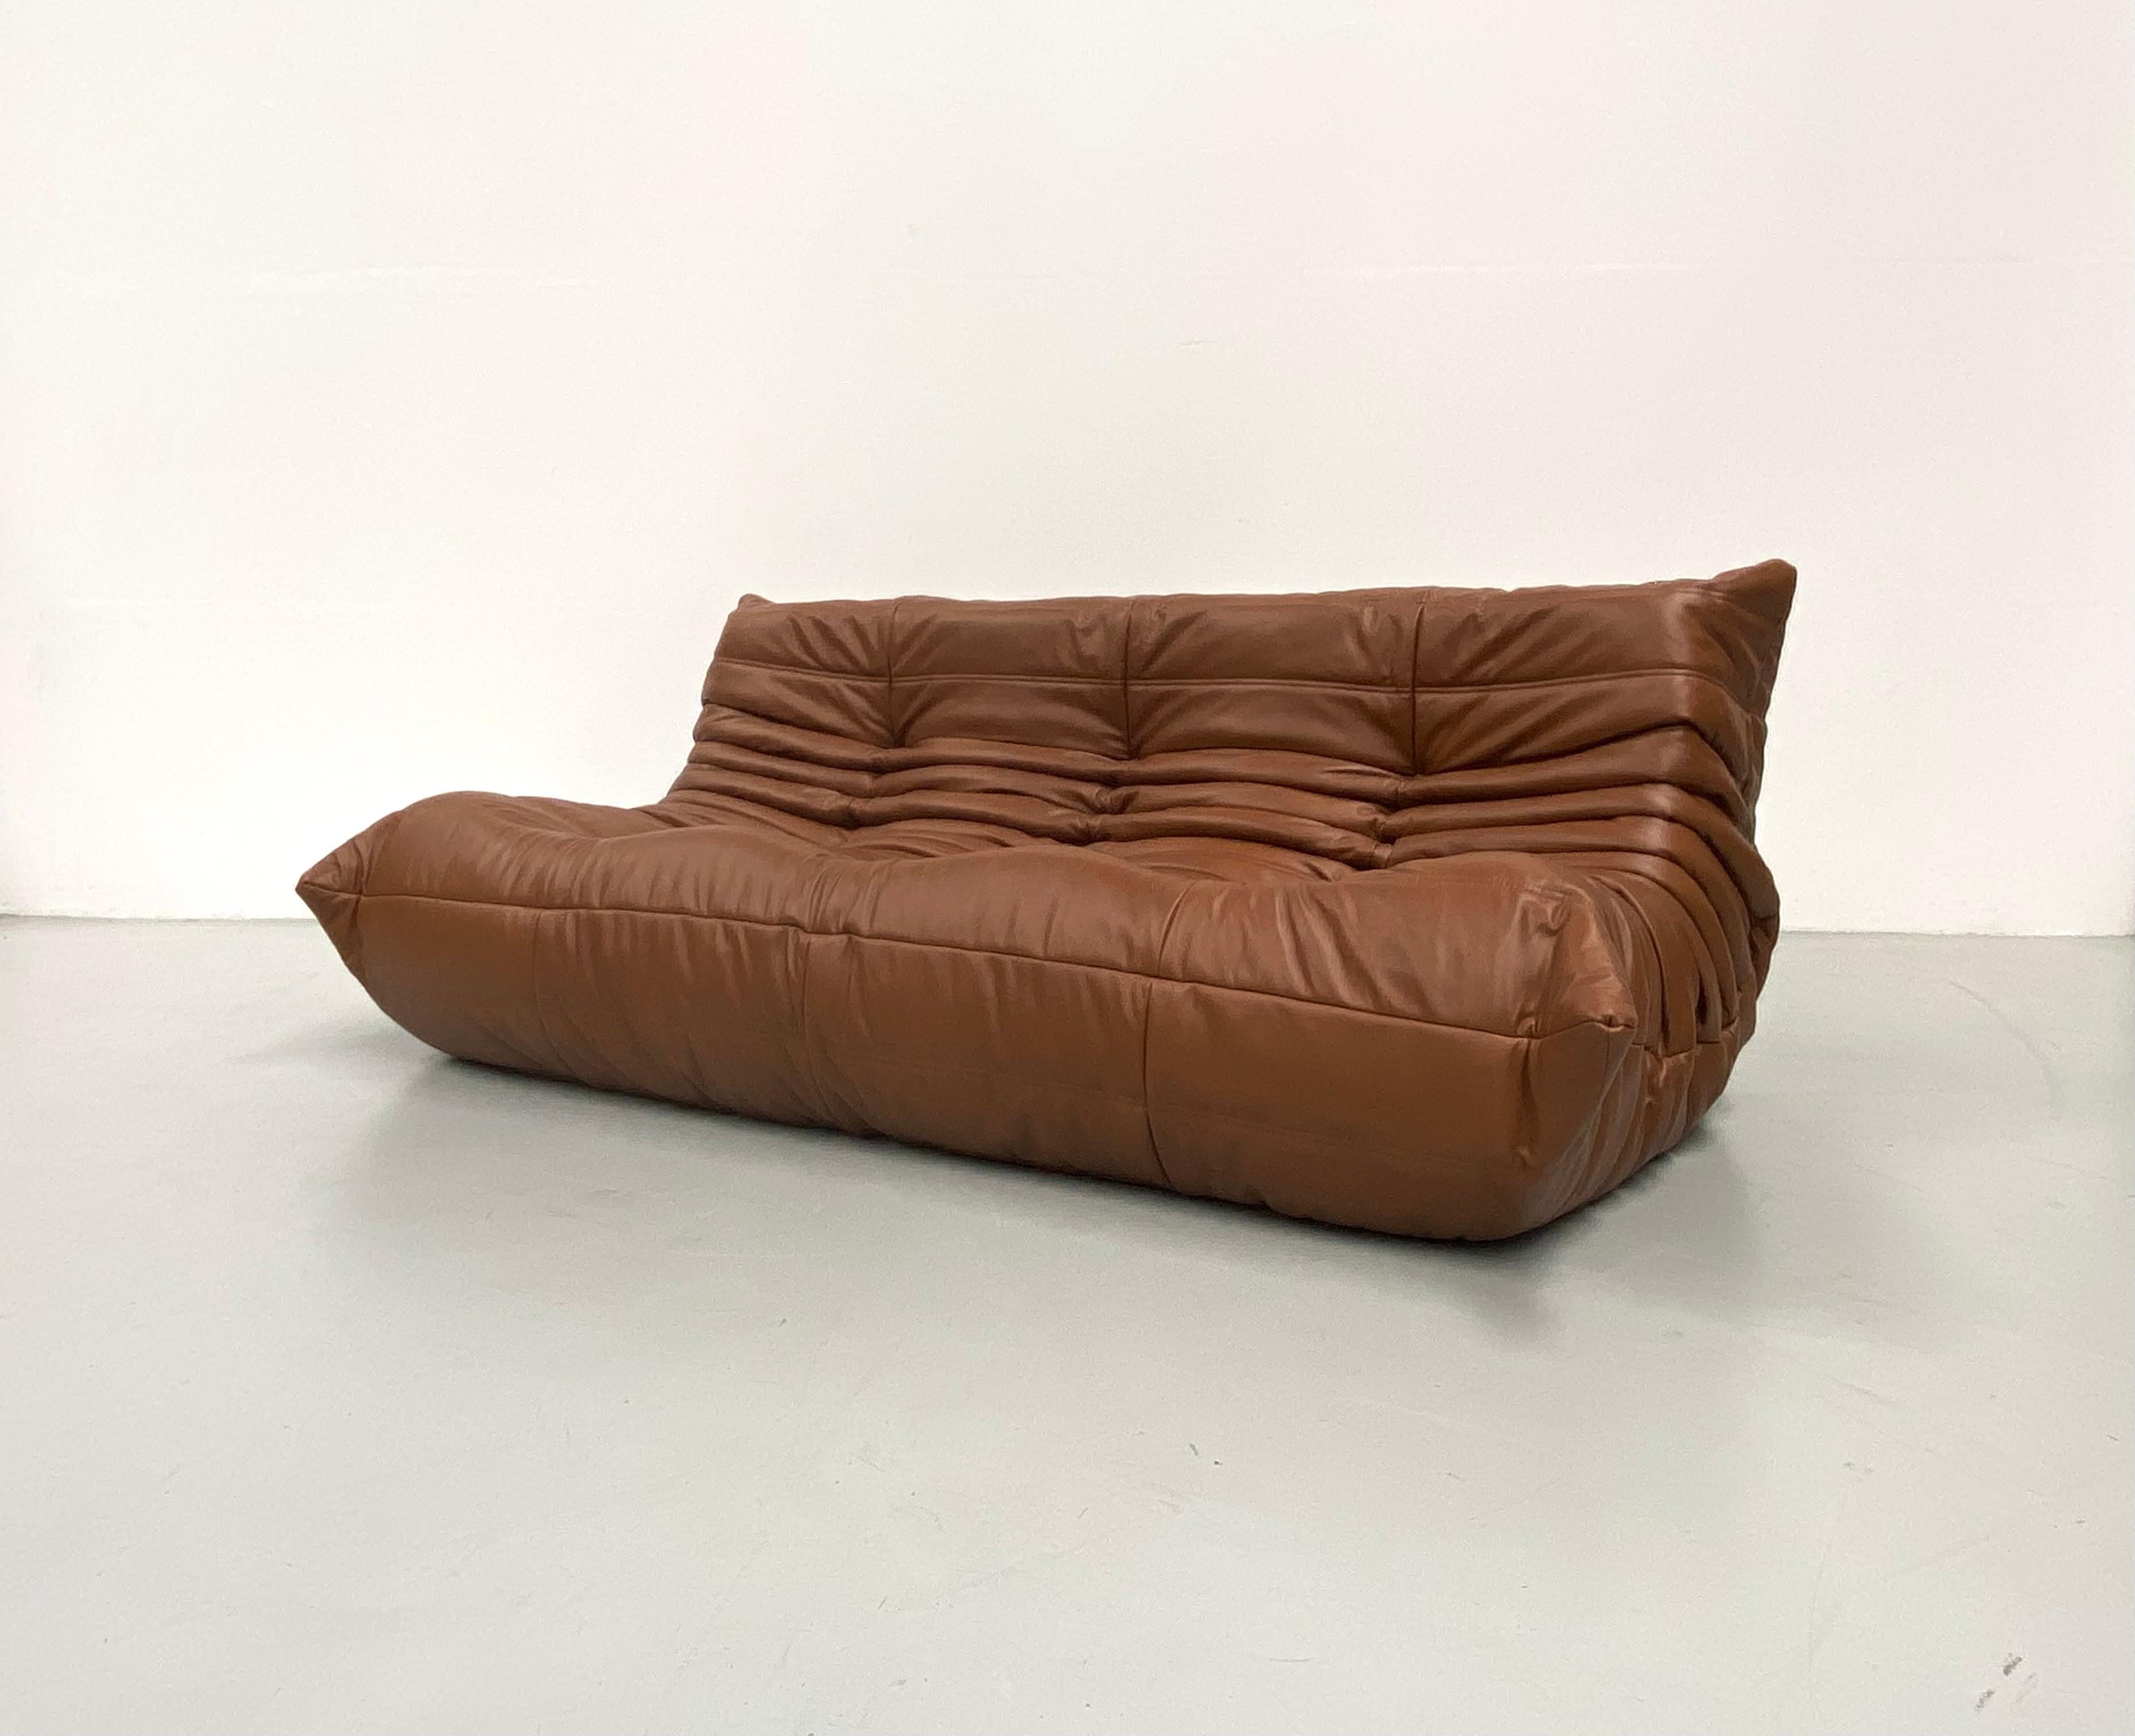 Le Togo a été conçu par Michel Ducaroy en 1973.  Il s'agit du premier canapé/fauteuil fabriqué uniquement en mousse et en cuir. L'intérieur est composé de mousse de 5 densités différentes. Fabriqué par Ligne Roset en France.